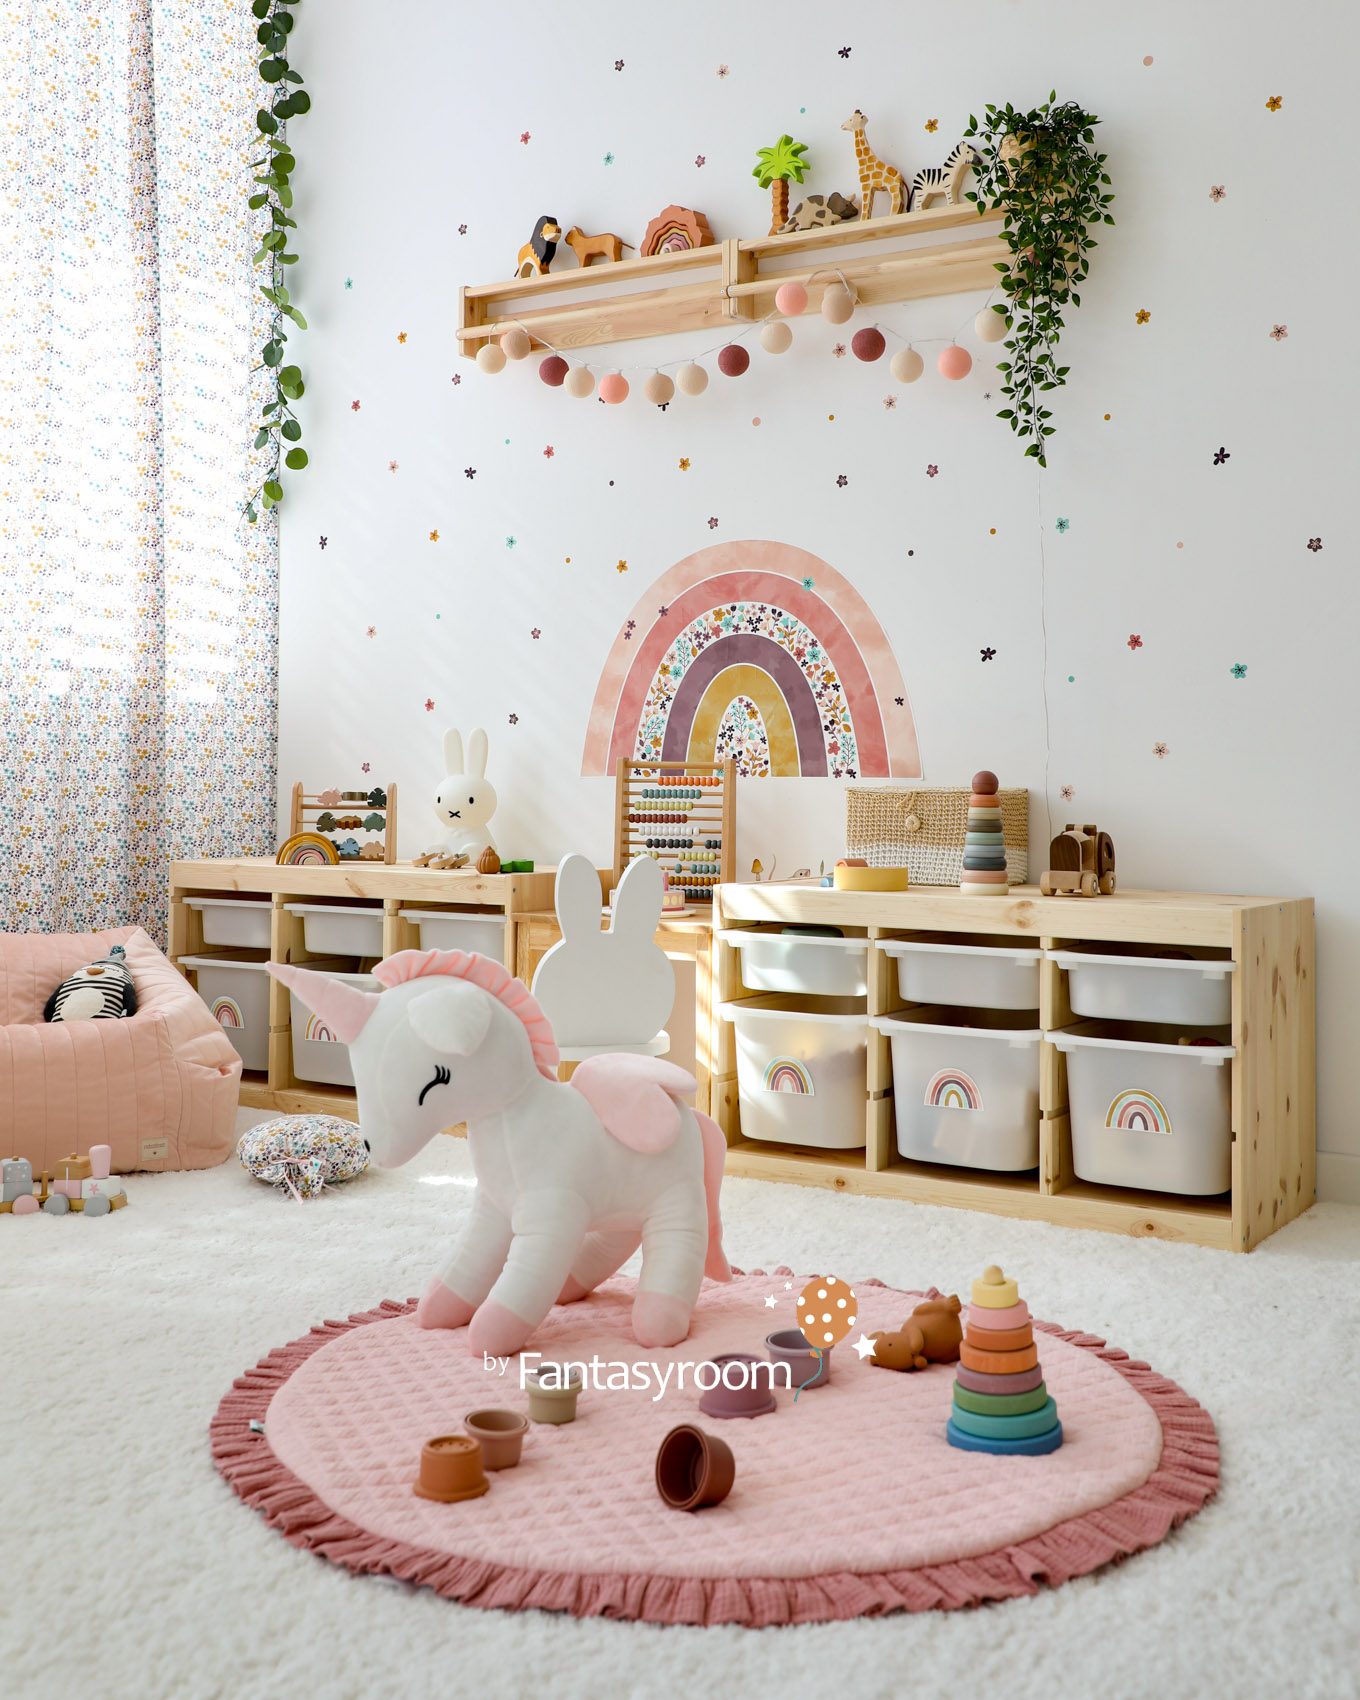 Spielzimmer mit Holzregal, Regenbogen Wandtattoo, Kuscheltieren und rosa Spielzeug